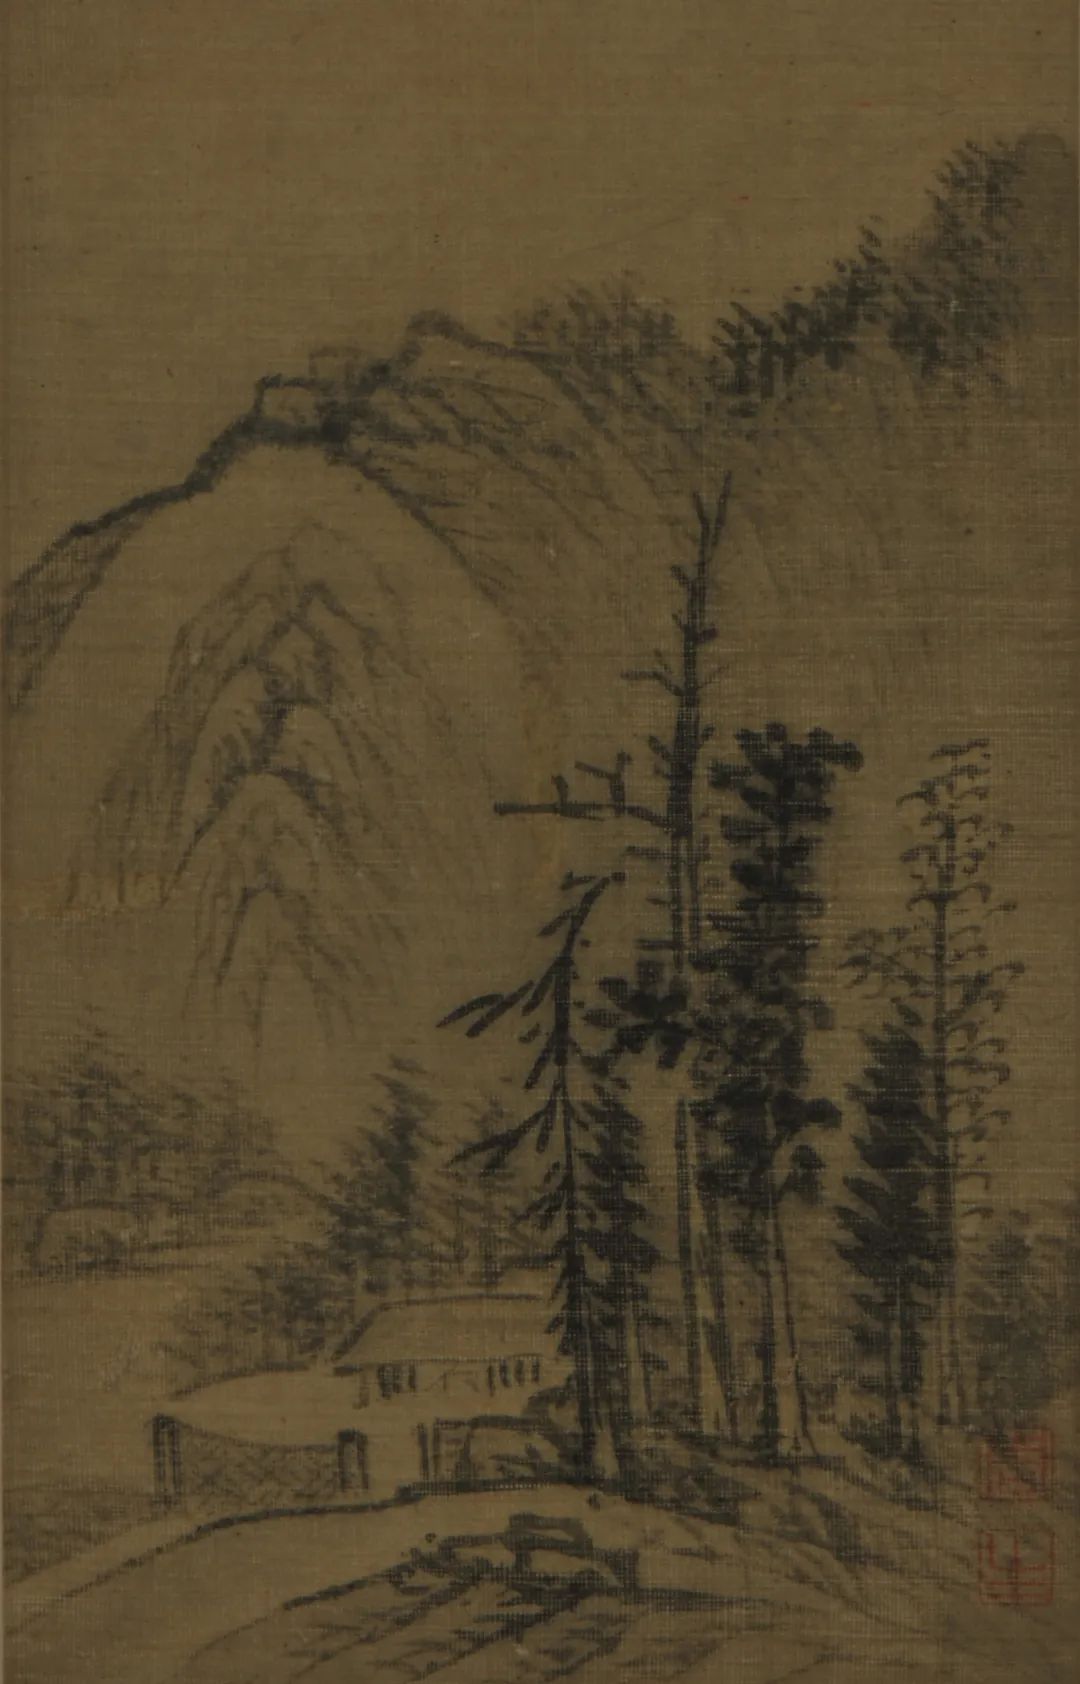 山水冊頁之一 明代 李永昌 絹本水墨 41.5×33cm 安徽博物院藏